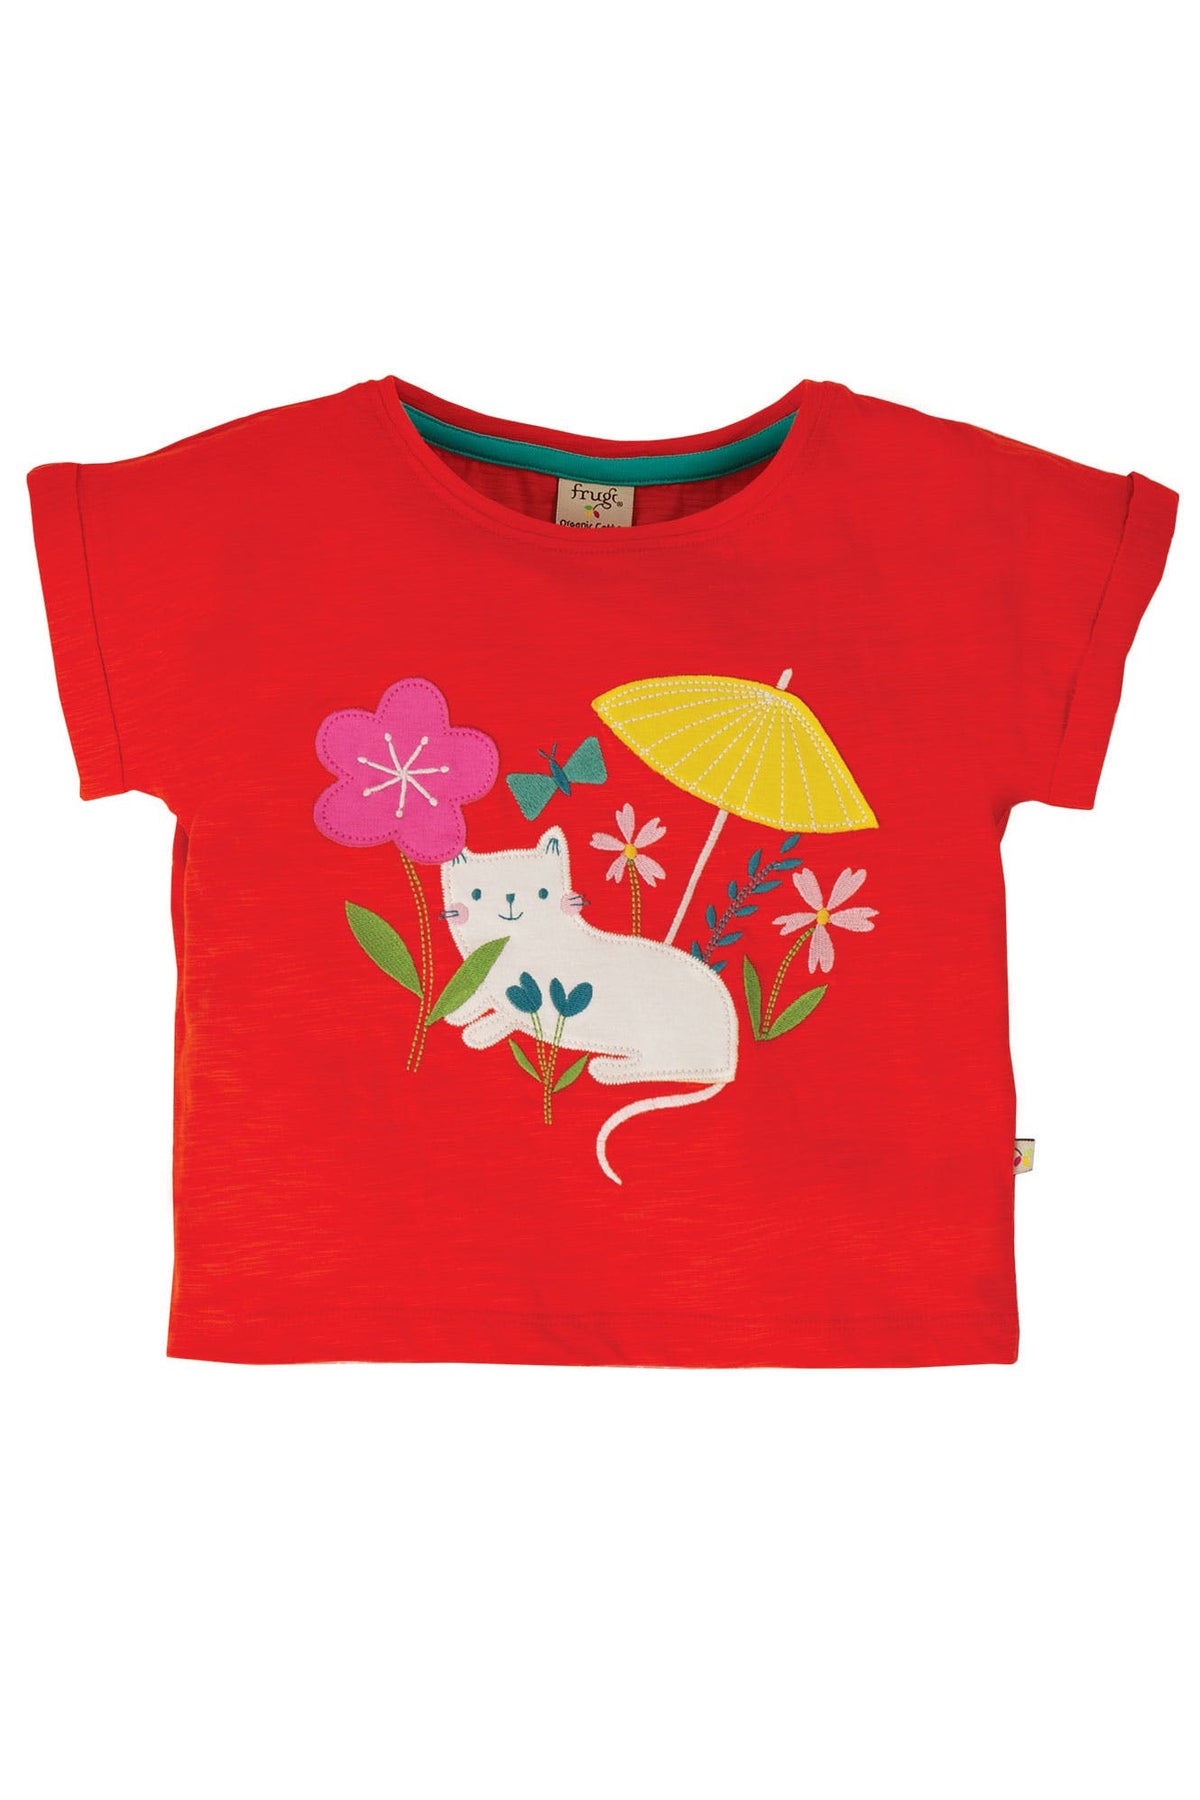 Rotes T-Shirt Katze mit Sonnenschirme ( 3-6 Monate)  von Frugi